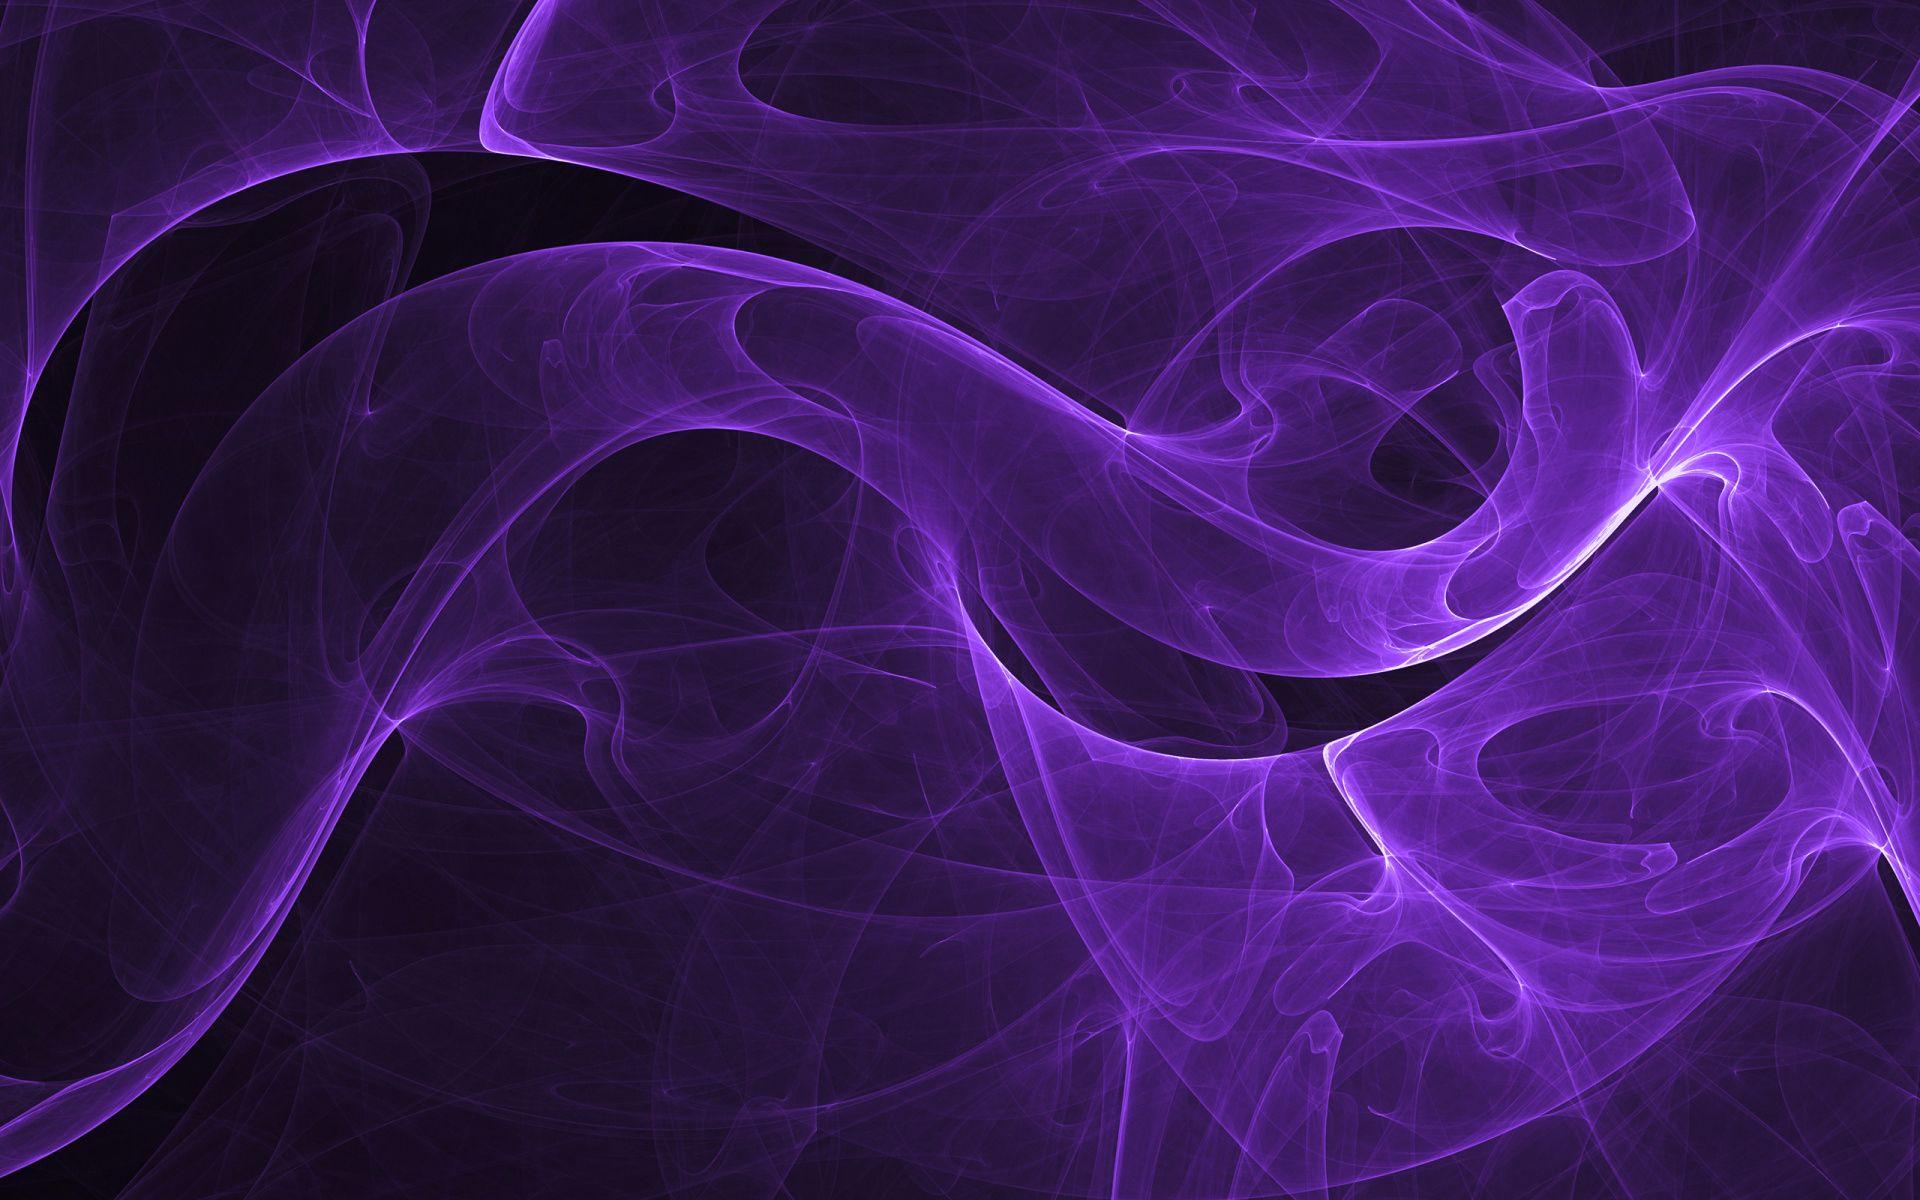 Purple Swirl Wallpapers - Top Free Purple Swirl Backgrounds ...